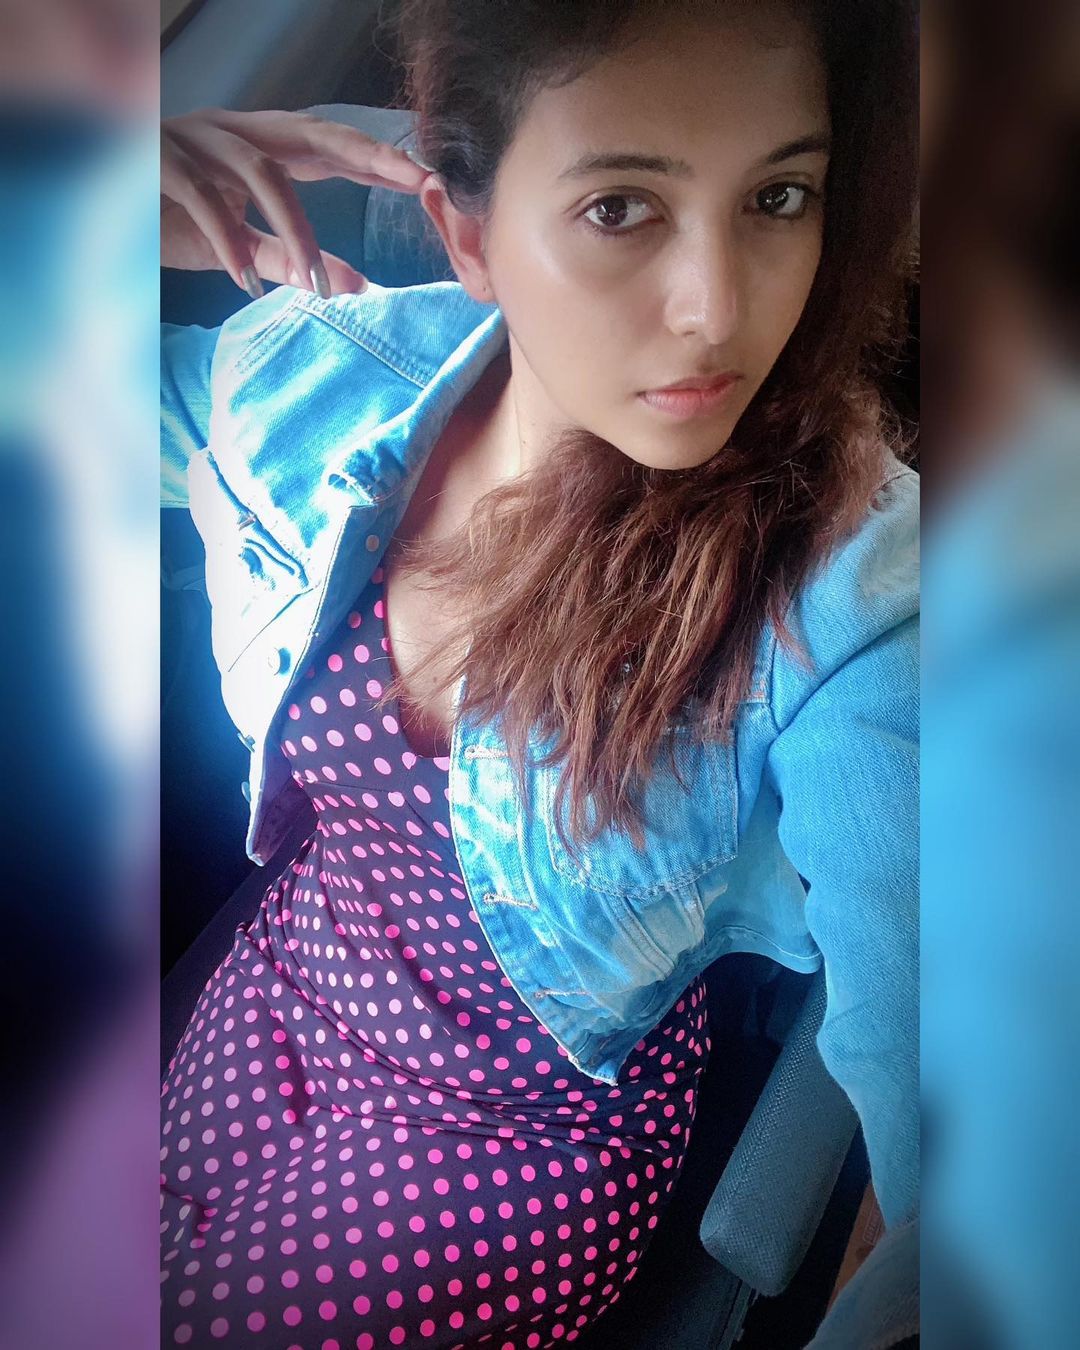  நடிகை அஞ்சலி ( Image : Instagram @yours_anjali)